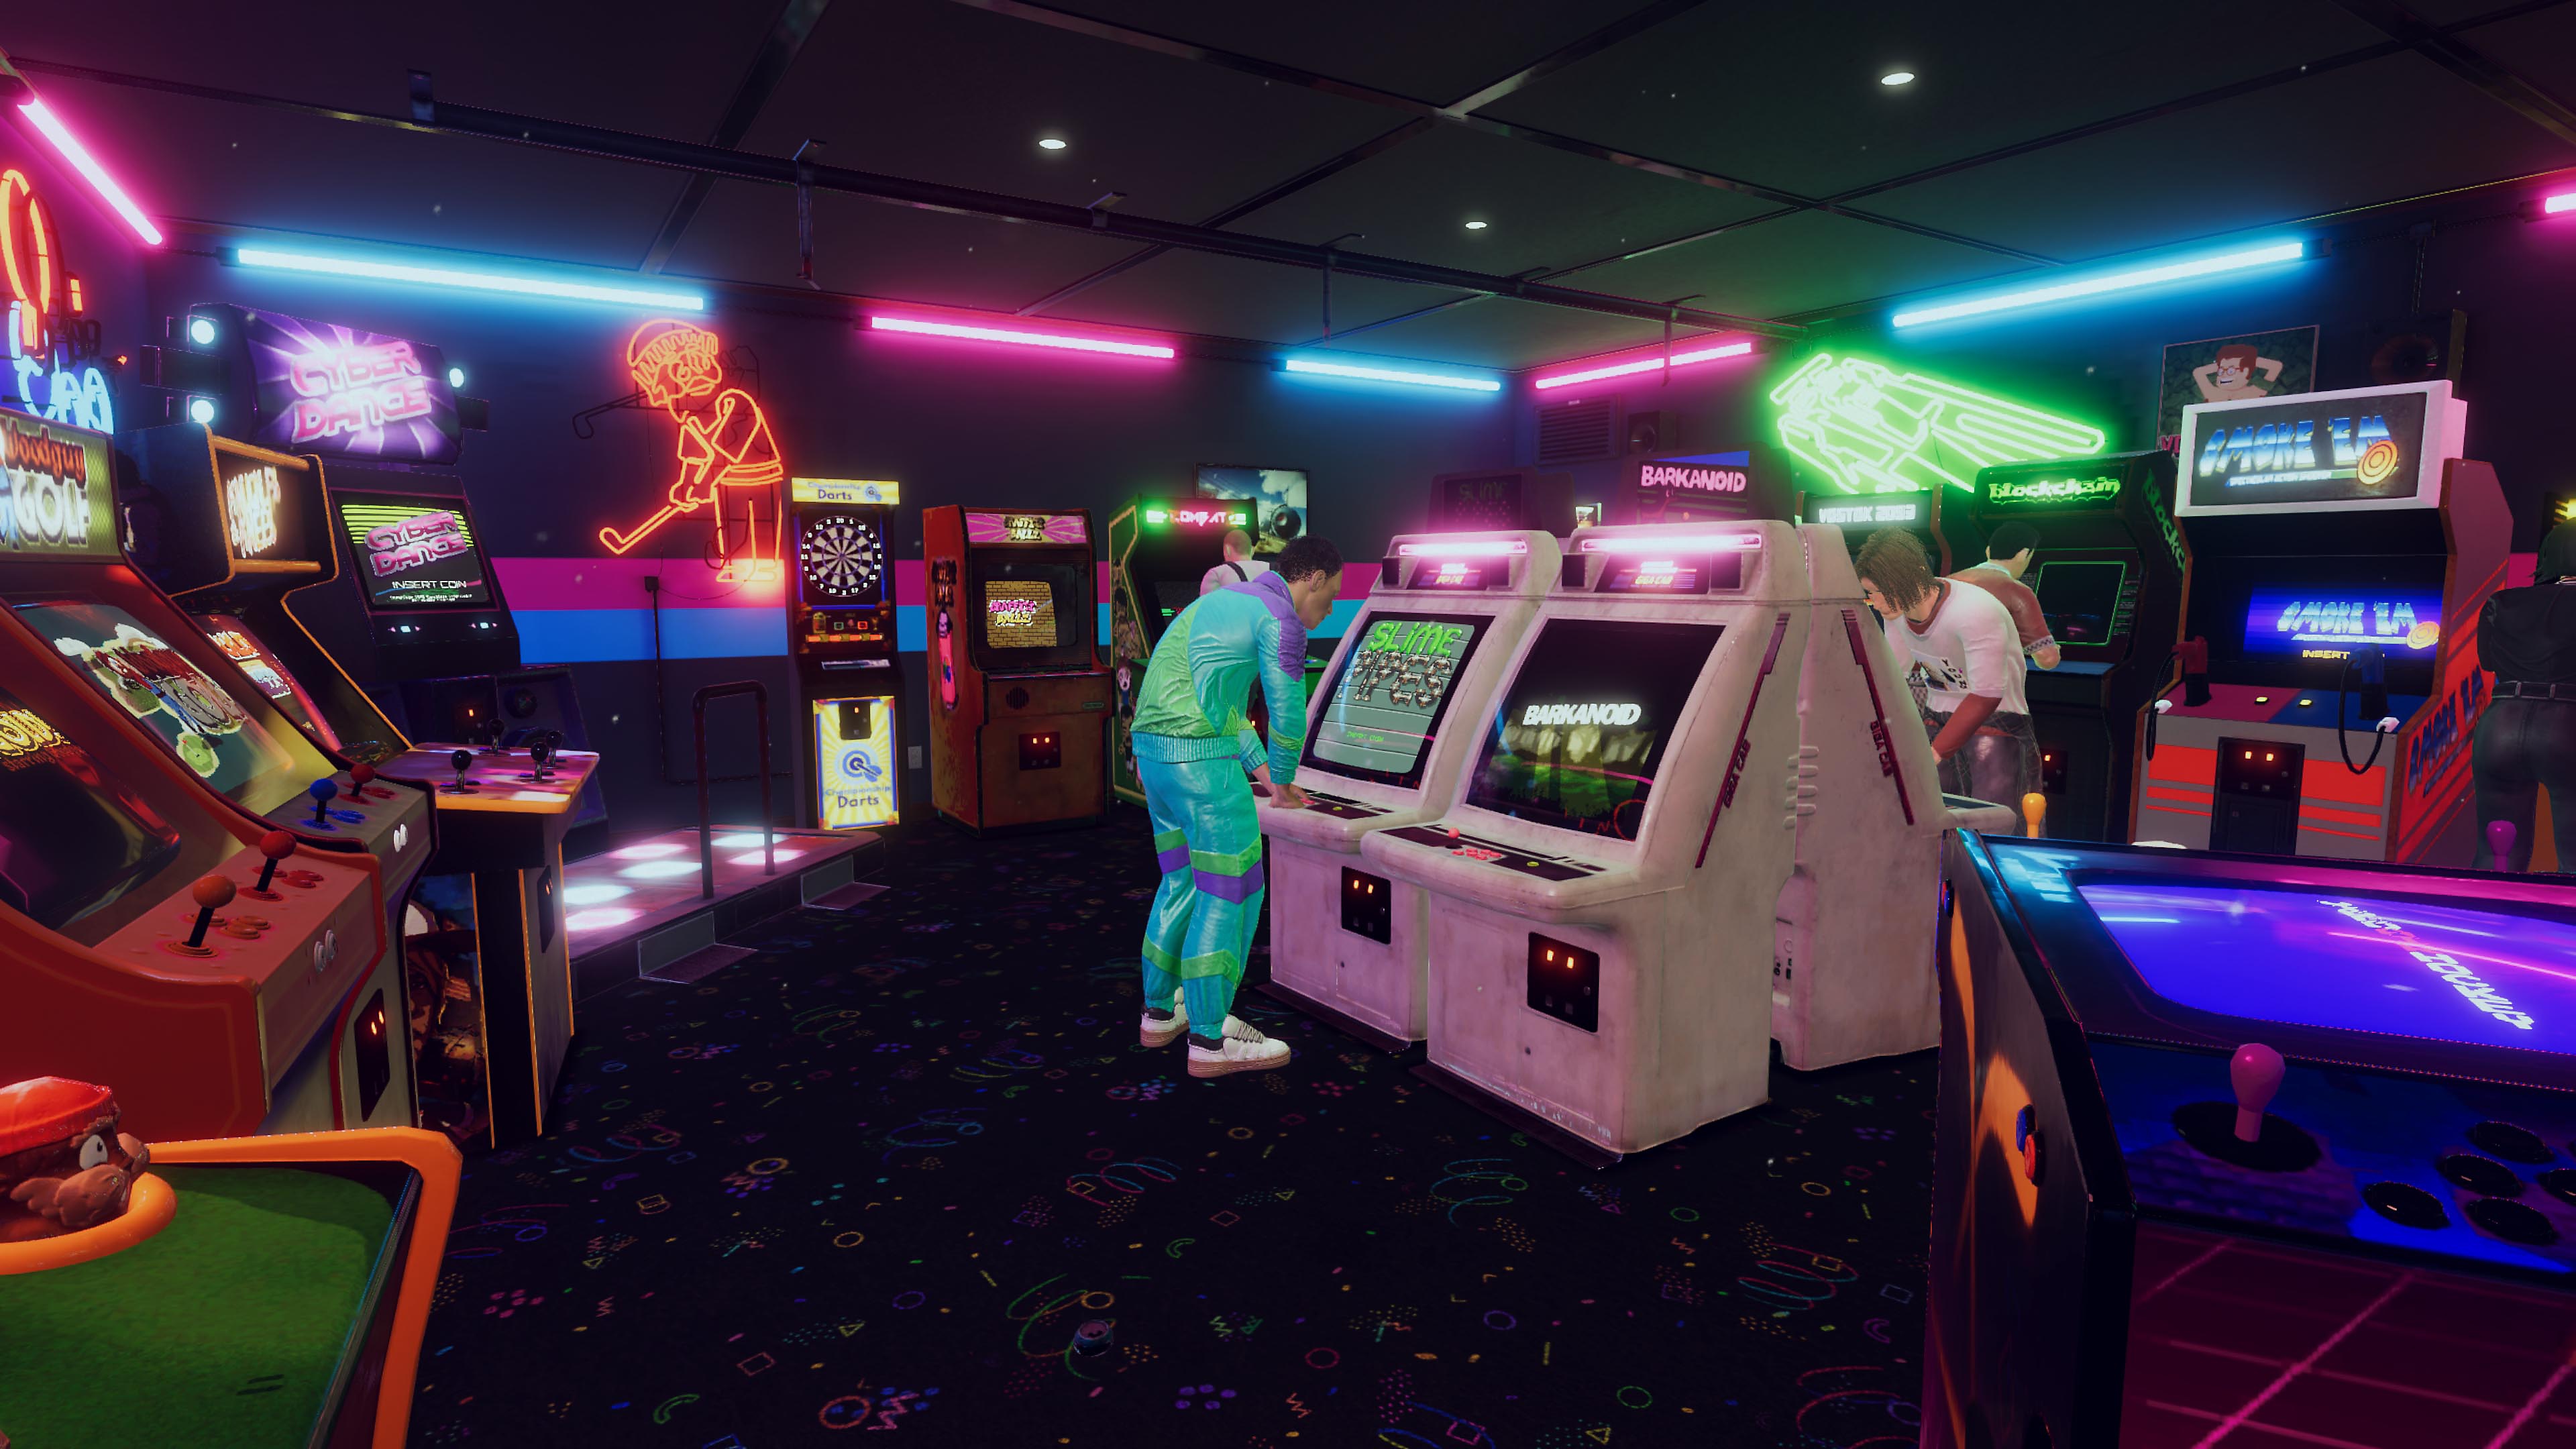 Arcade Paradise-screenshot van een ouderwetse arcadehal met blauwe en roze neonlampen